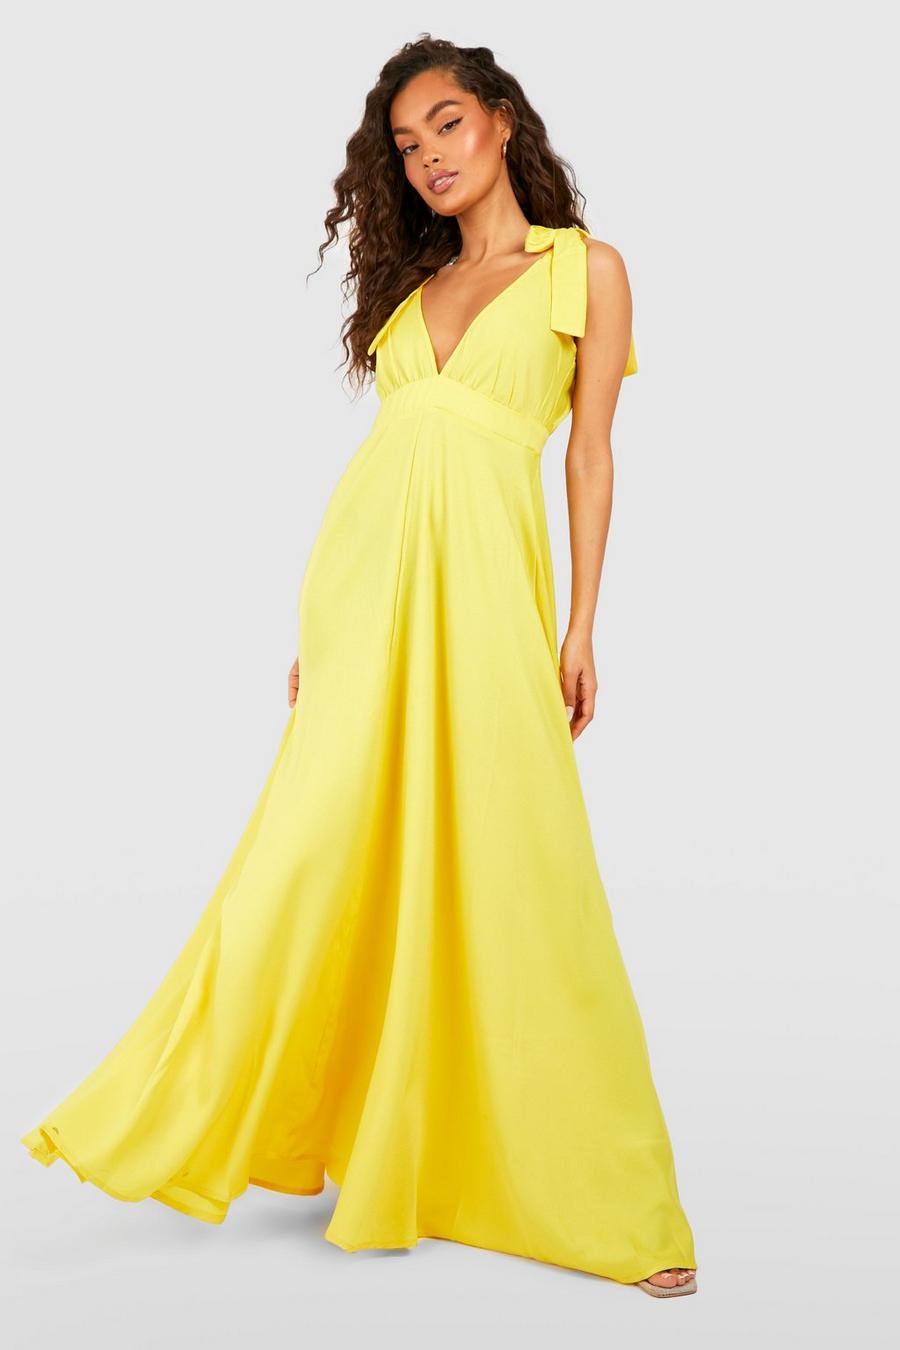 צהוב amarillo שמלת מקסי עם מחשוף עמוק וכתפיות עם קשירה